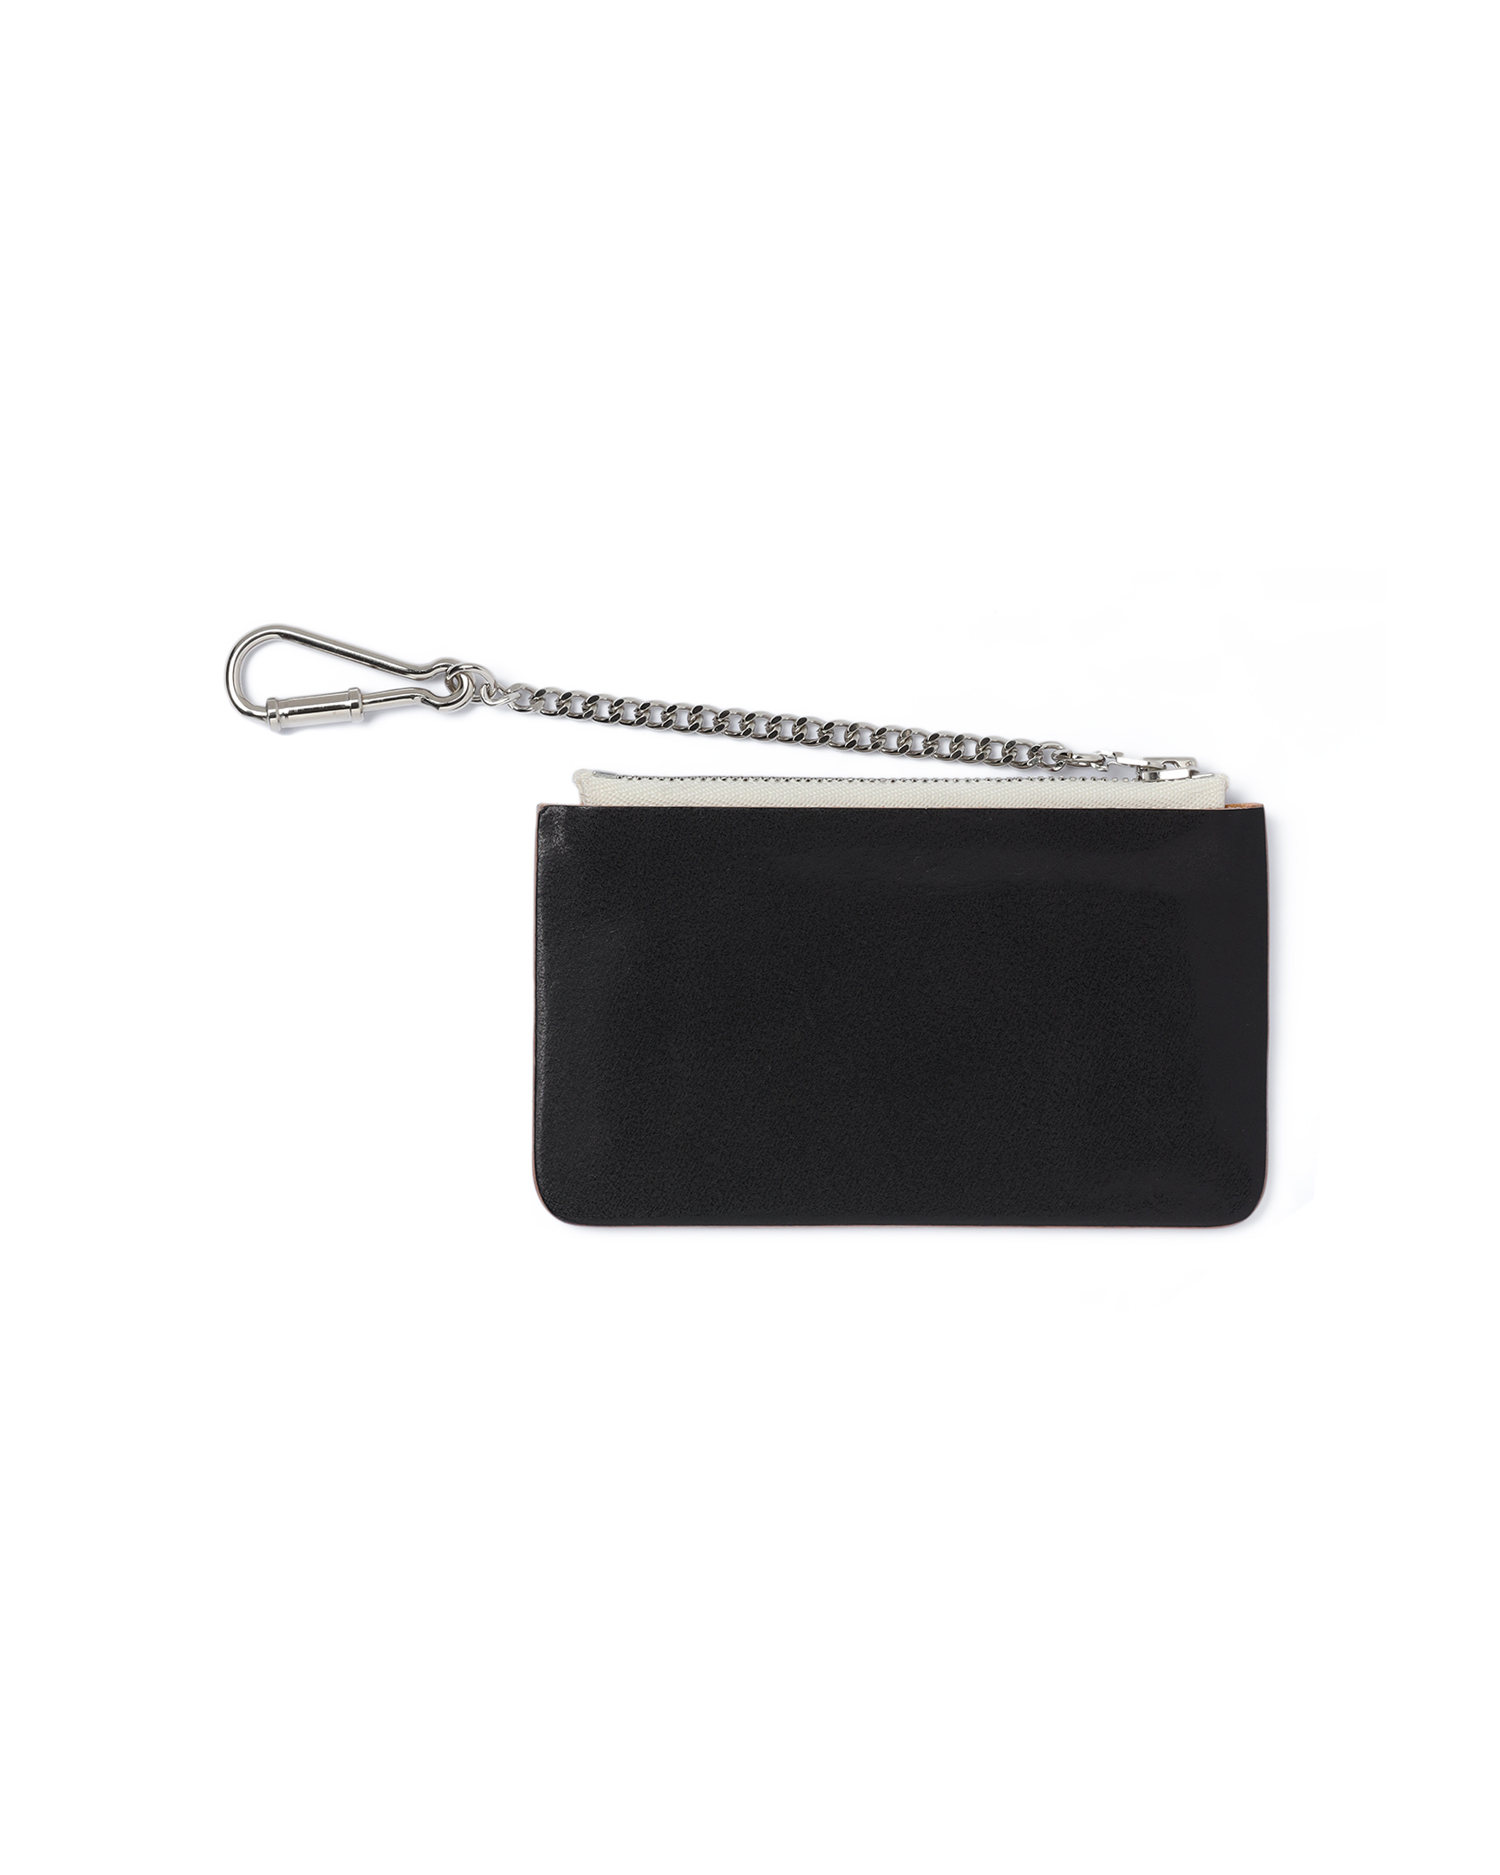 HENDER SCHEME Seamless chain purse| ITeSHOP